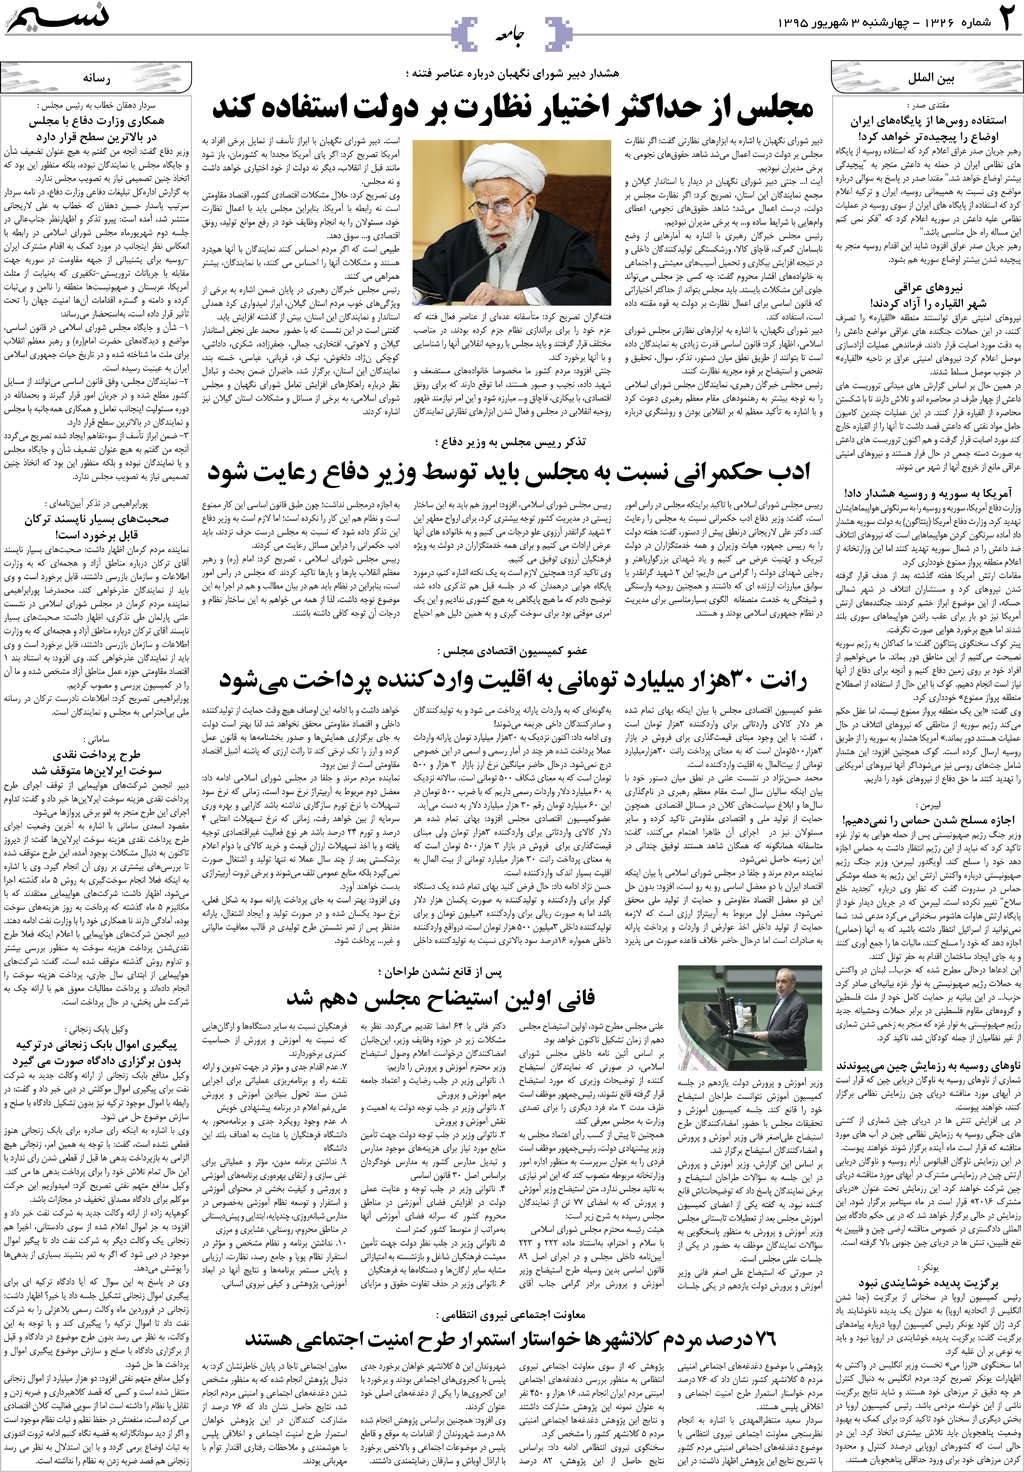 صفحه جامعه روزنامه نسیم شماره 1326